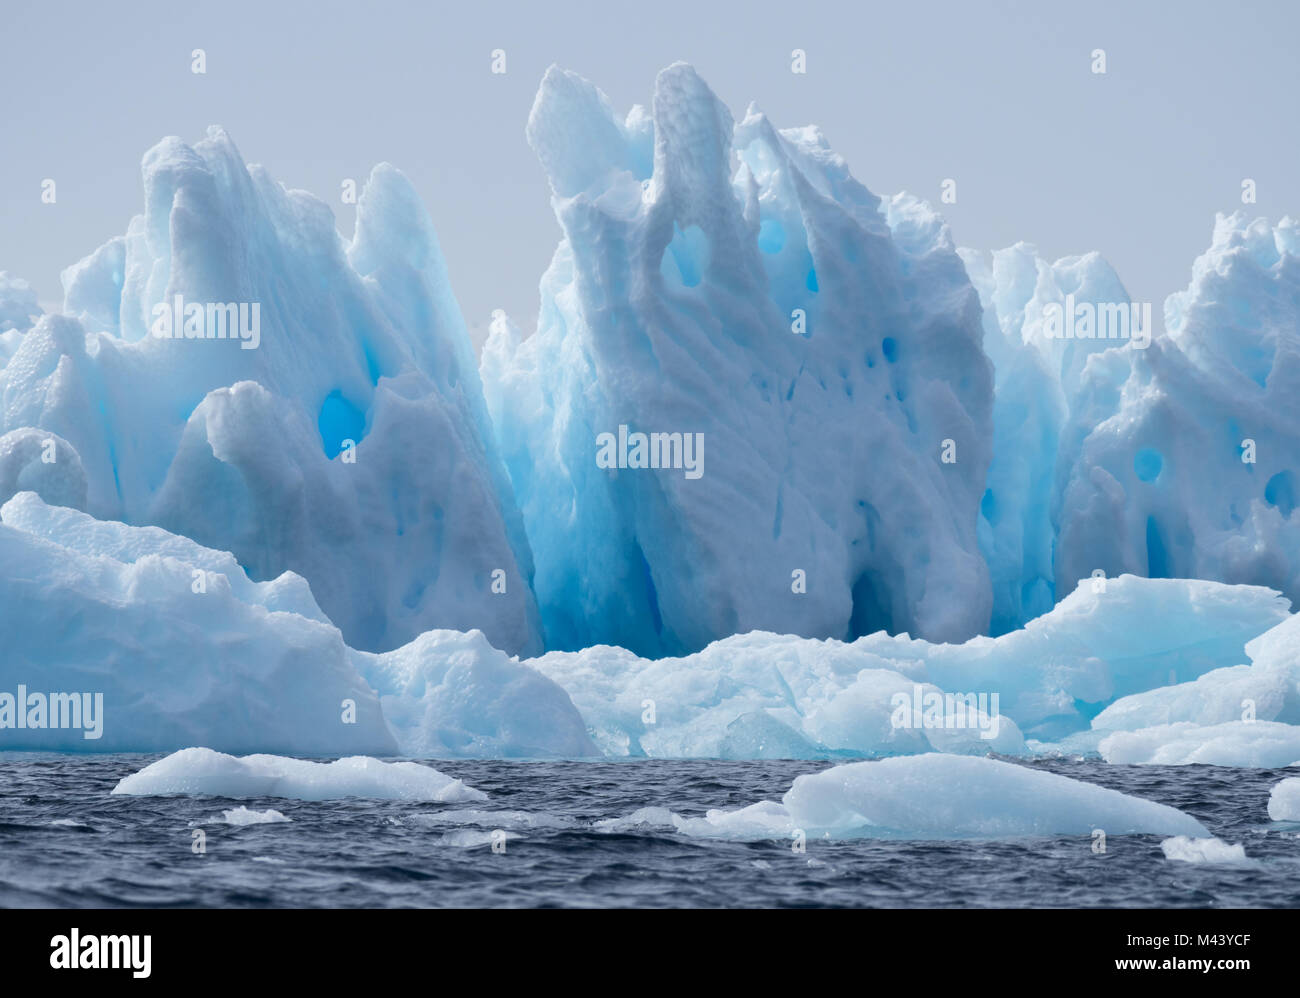 Un léger, moyen et bleu foncé iceberg flottant dans l'eau gris foncé de l'océan Austral au son de l'Antarctique. Ciel couvert est ci-dessus. Banque D'Images